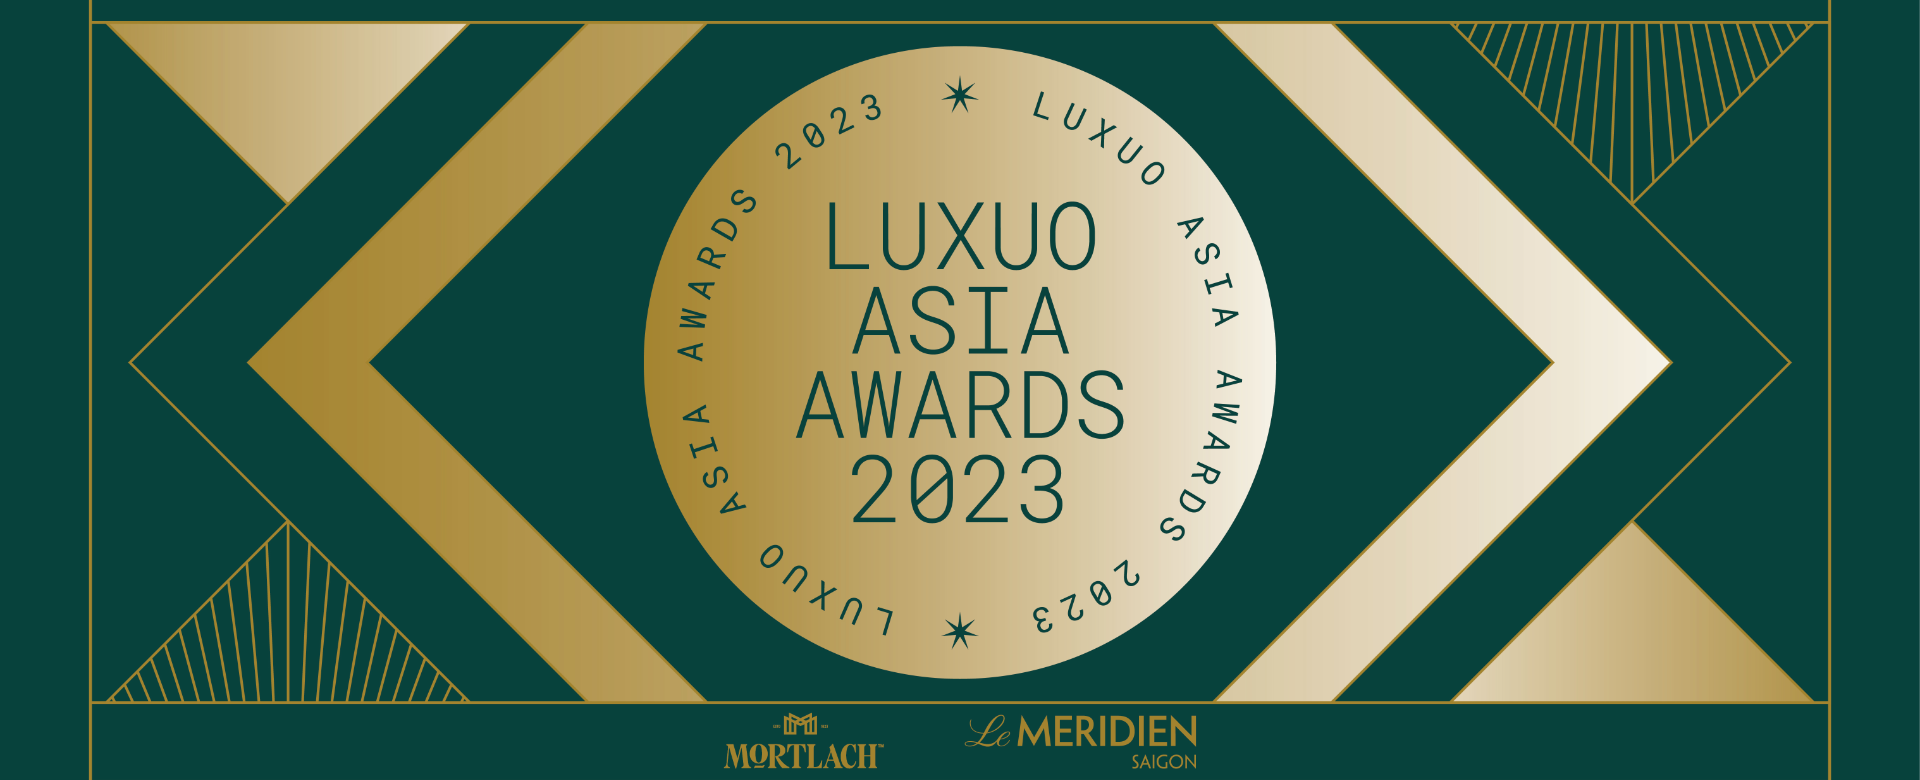 “Luxuo Asia Awards 2023”: “Now & Next” – Thời điểm vàng của ngành xa xỉ tại Việt Nam và châu lục